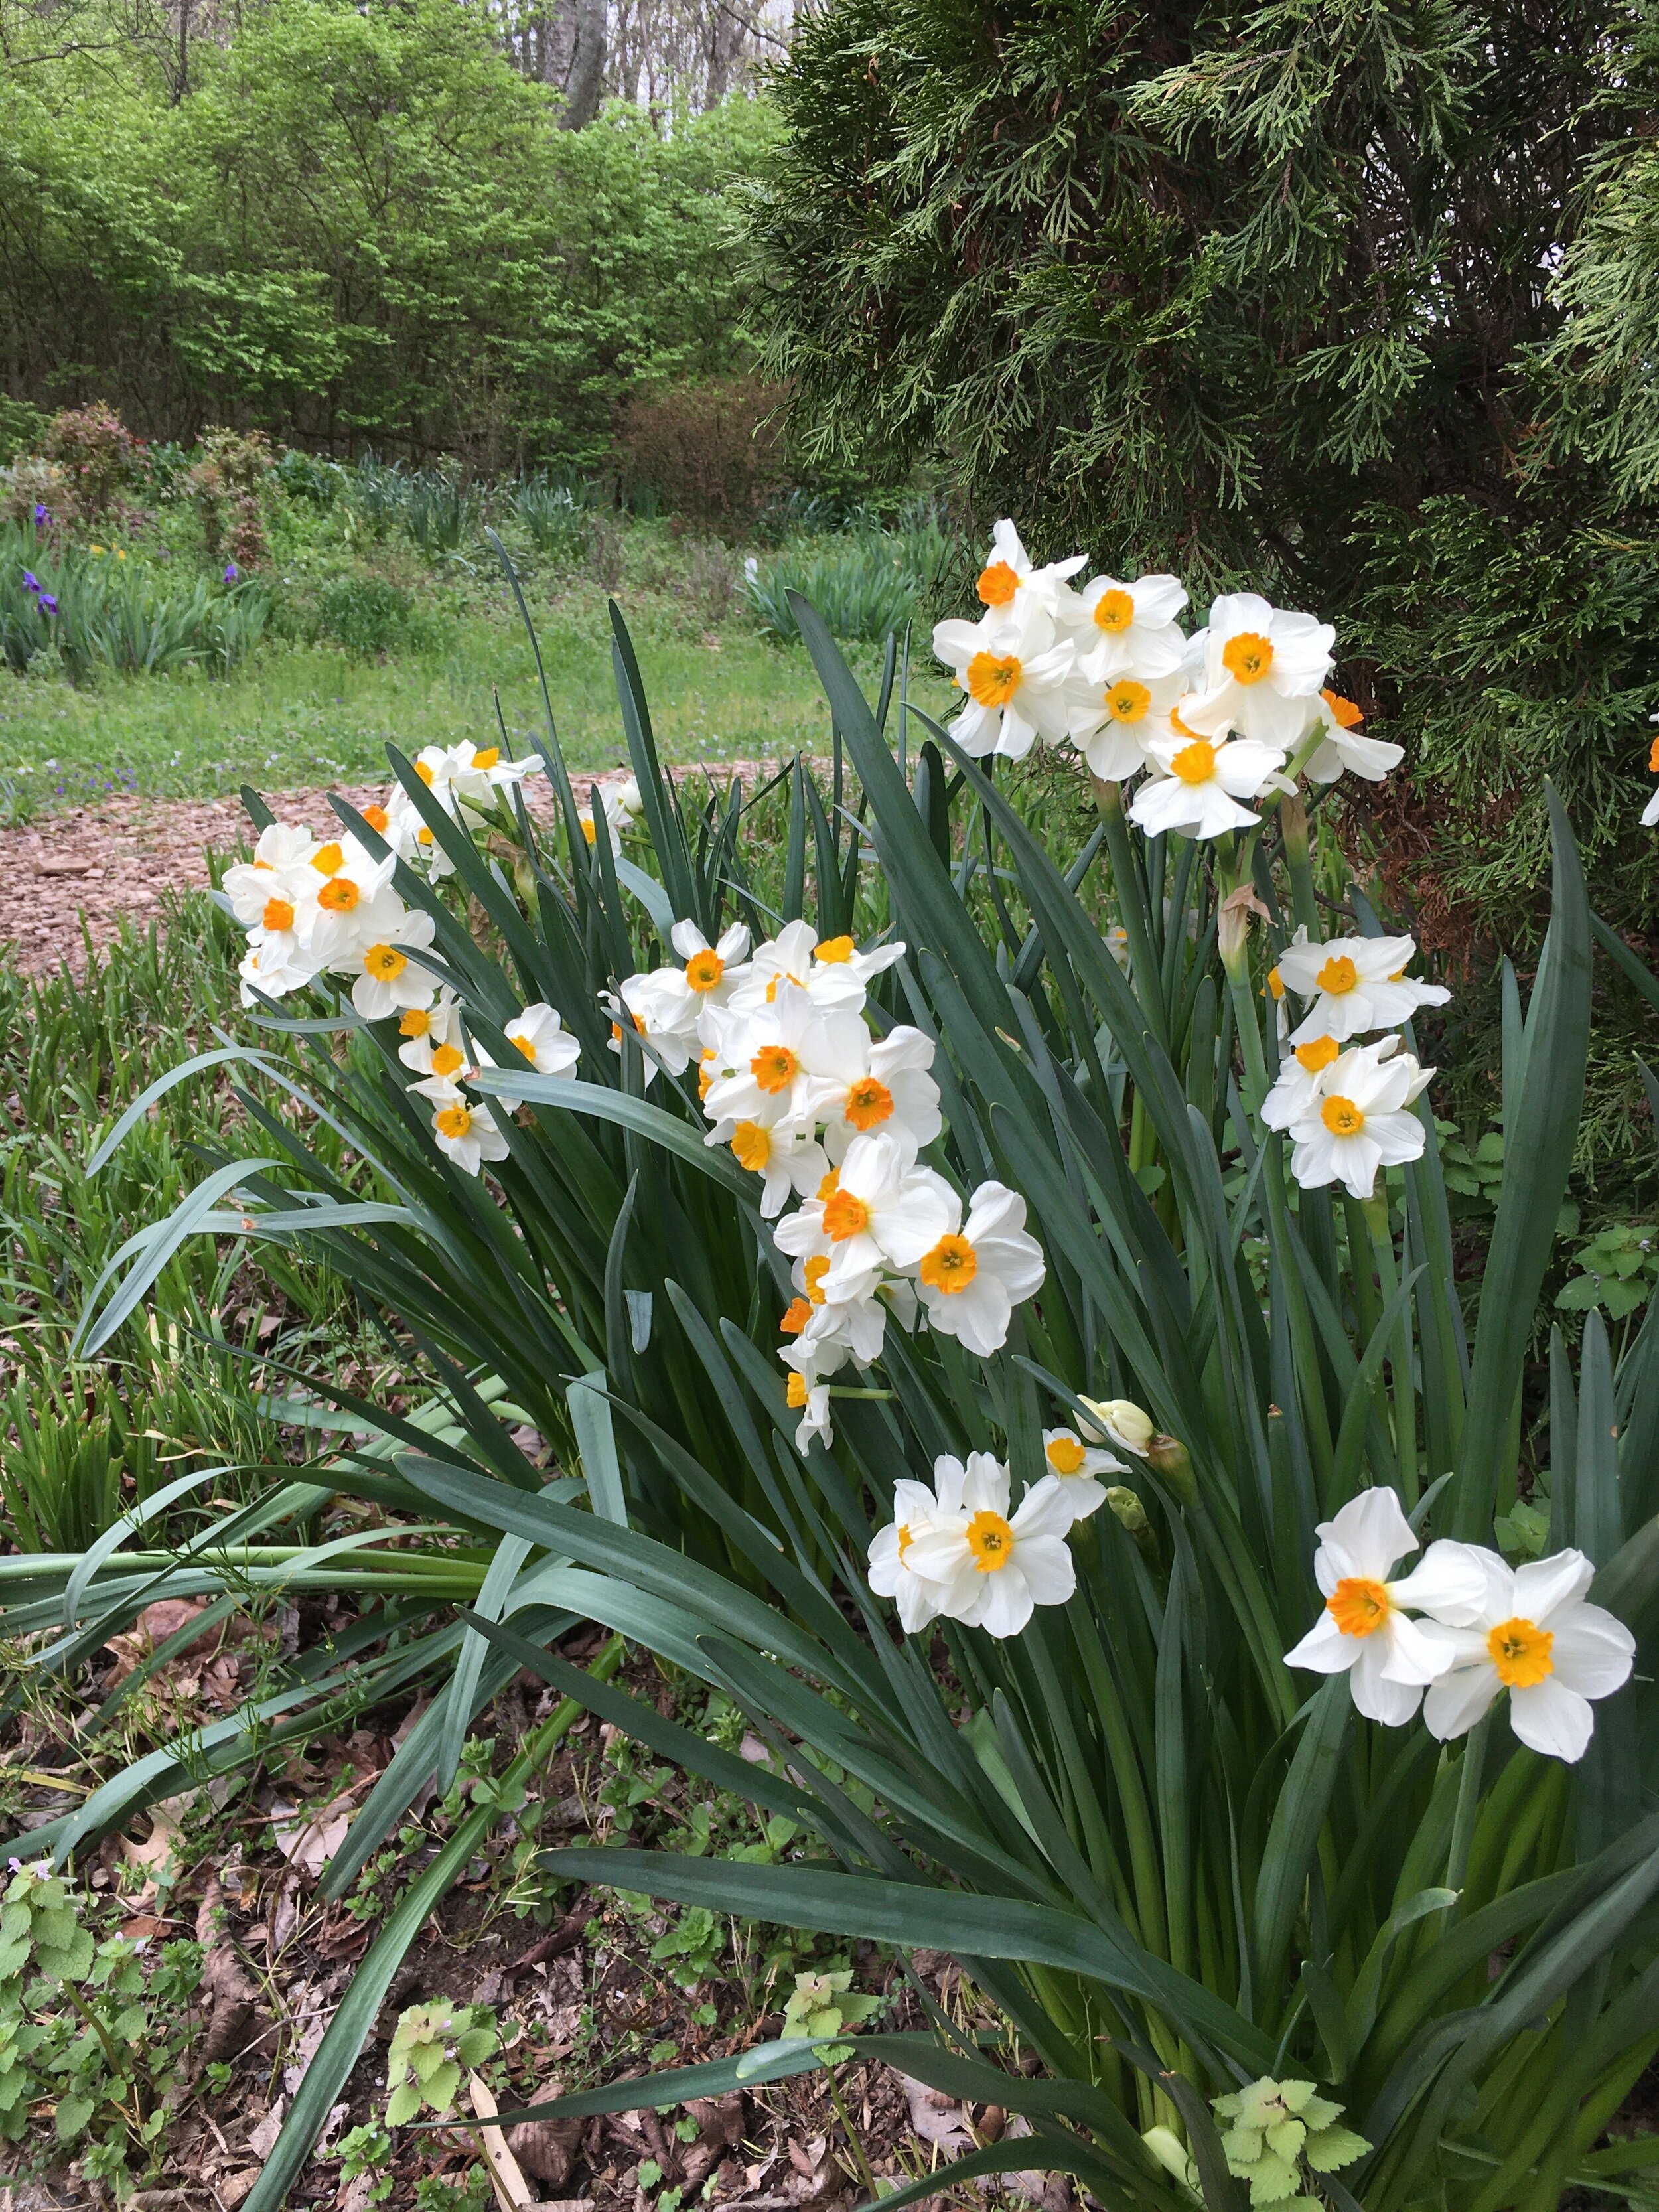 11) Daffodil